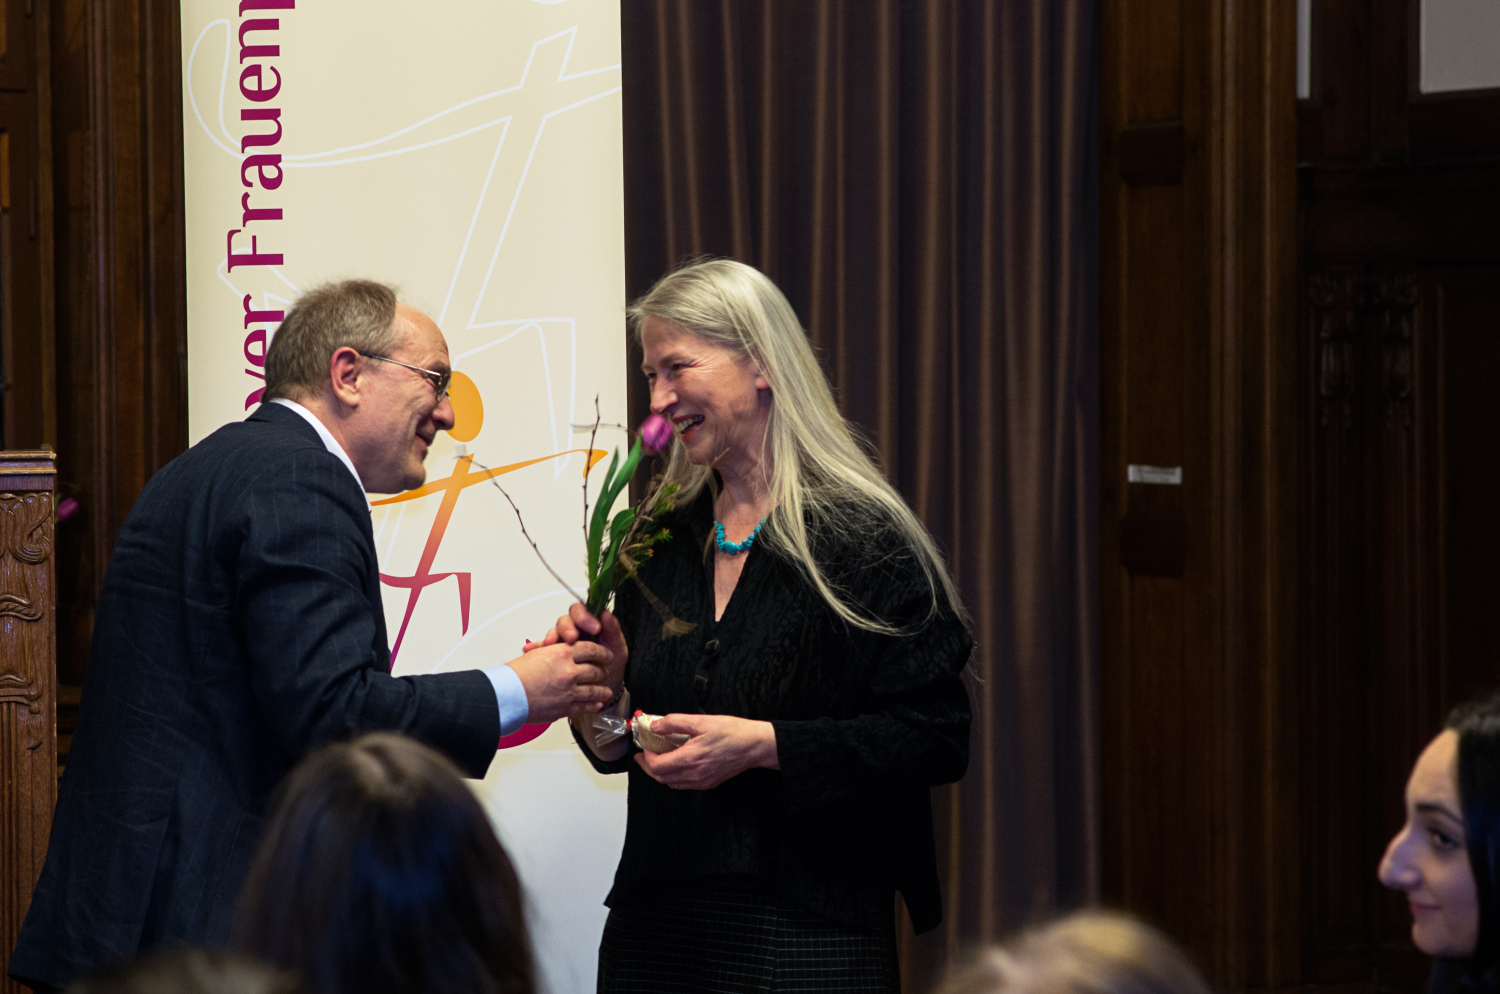 BVV-Vorsteher Michael van der Meer übergibt den Pankower Frauenpreis 2020 an die die Preisträgerin Renate Laurentius